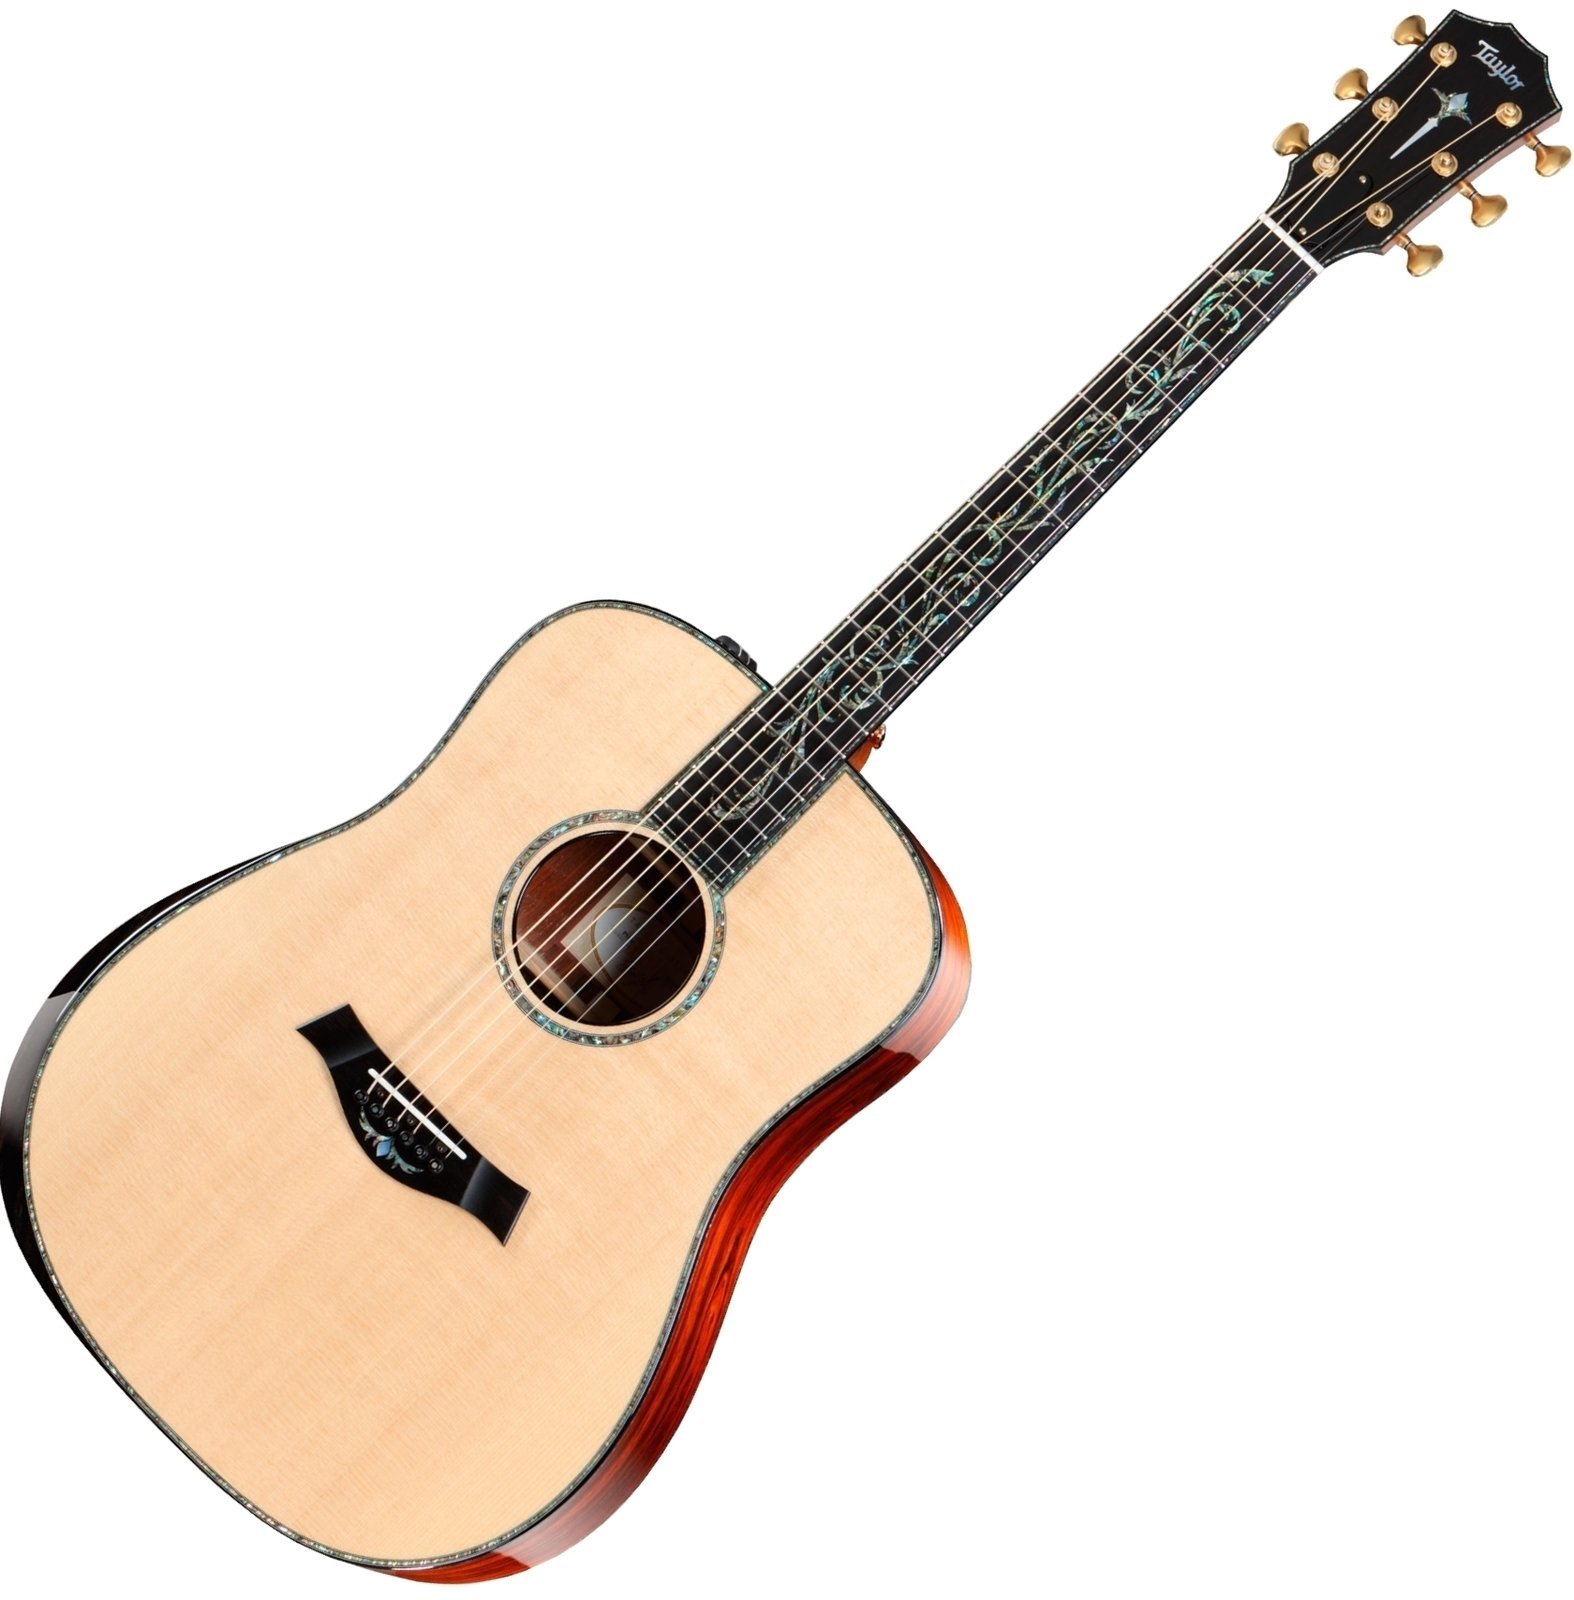 Dreadnought elektro-akoestische gitaar Taylor Guitars PS10e Presentation Dreadnought Cocobolo Natural